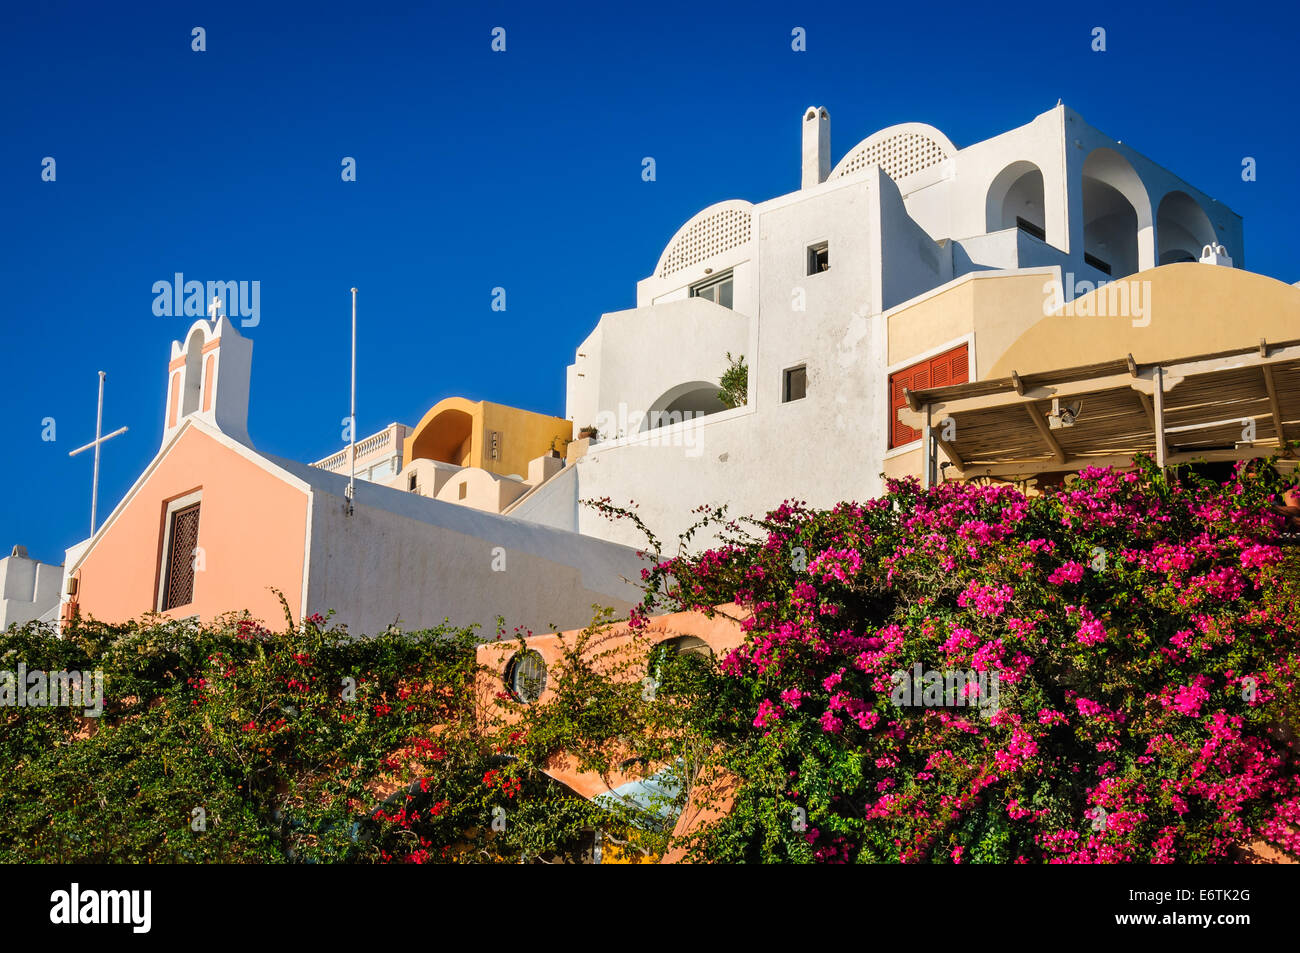 Santorini, Grecia. Paesaggio urbano con la città di Oia a Thira, isole greche nel Mar Egeo, greco landmark. Foto Stock